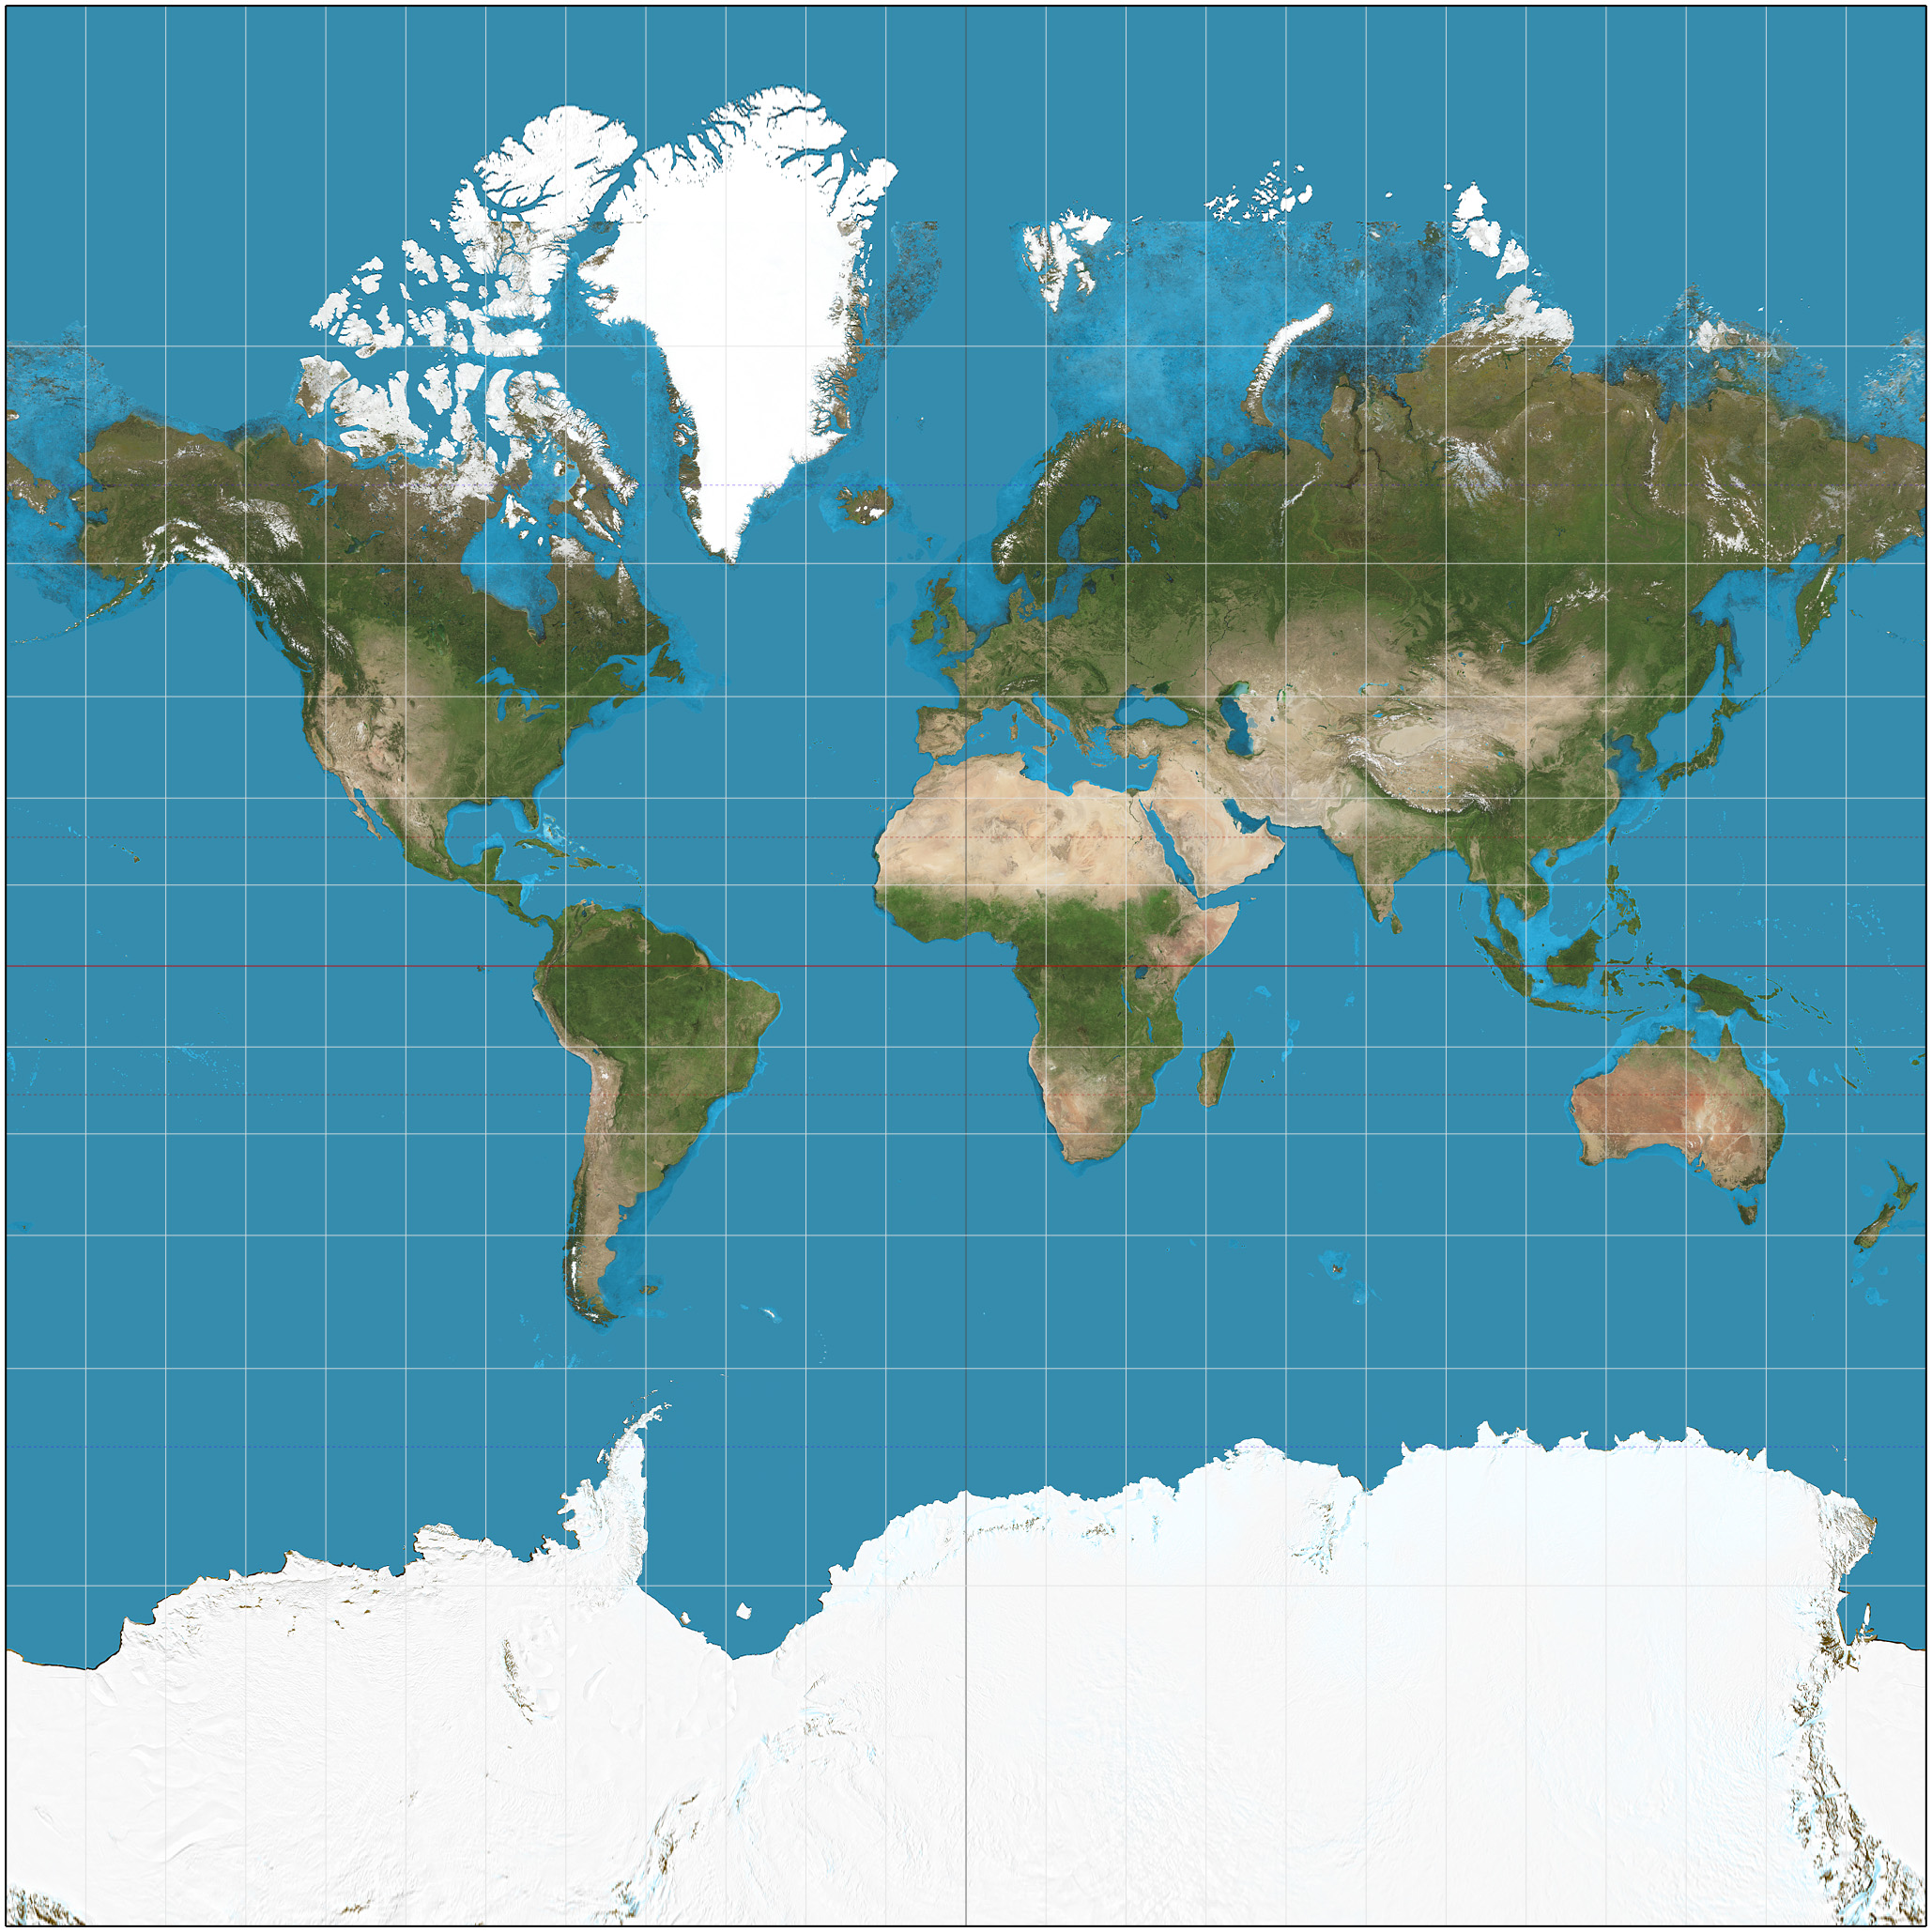 Khám phá thế giới với bản đồ thế giới 2D cập nhật mới nhất. Với những thông tin và địa danh mới nhất, bạn sẽ đưa mình vào một tòa nhà cổ kính ở châu Âu hay đến những bãi biển tuyệt đẹp ở châu Á chỉ với một cái nhìn. Vậy còn chần chờ gì nữa, hãy khám phá thế giới ngay bây giờ!